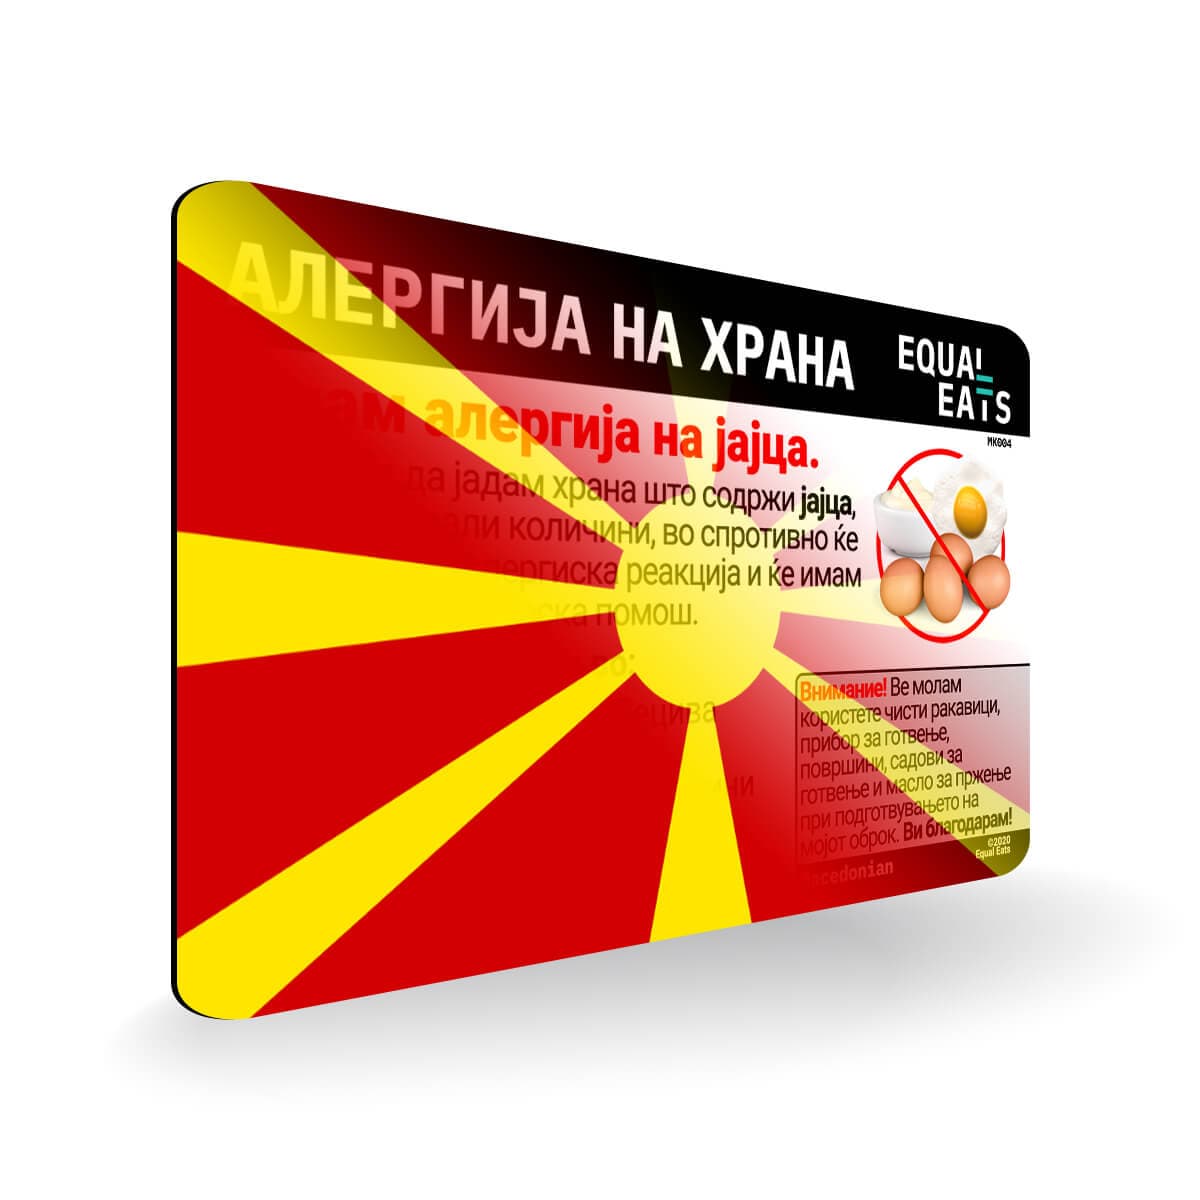 Egg Allergy in Macedonian. Egg Allergy Card for Macedonia